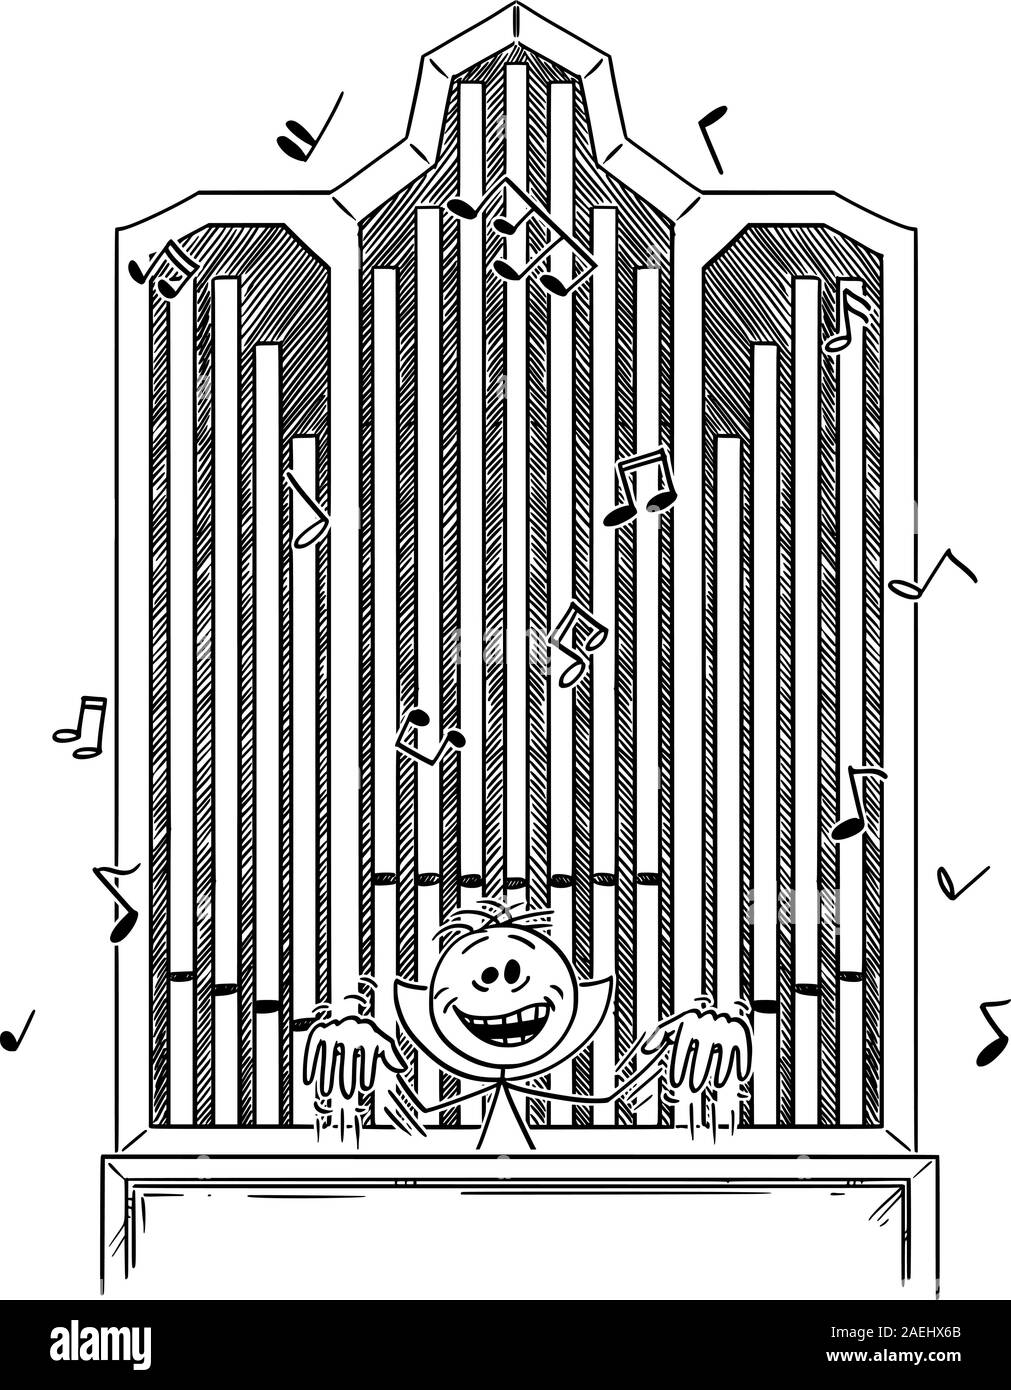 Vektor cartoon Strichmännchen Zeichnen konzeptionelle Darstellung der verrückte Böse verrückter oder Maniac lachen und spielen Musik für Orgel. Stock Vektor